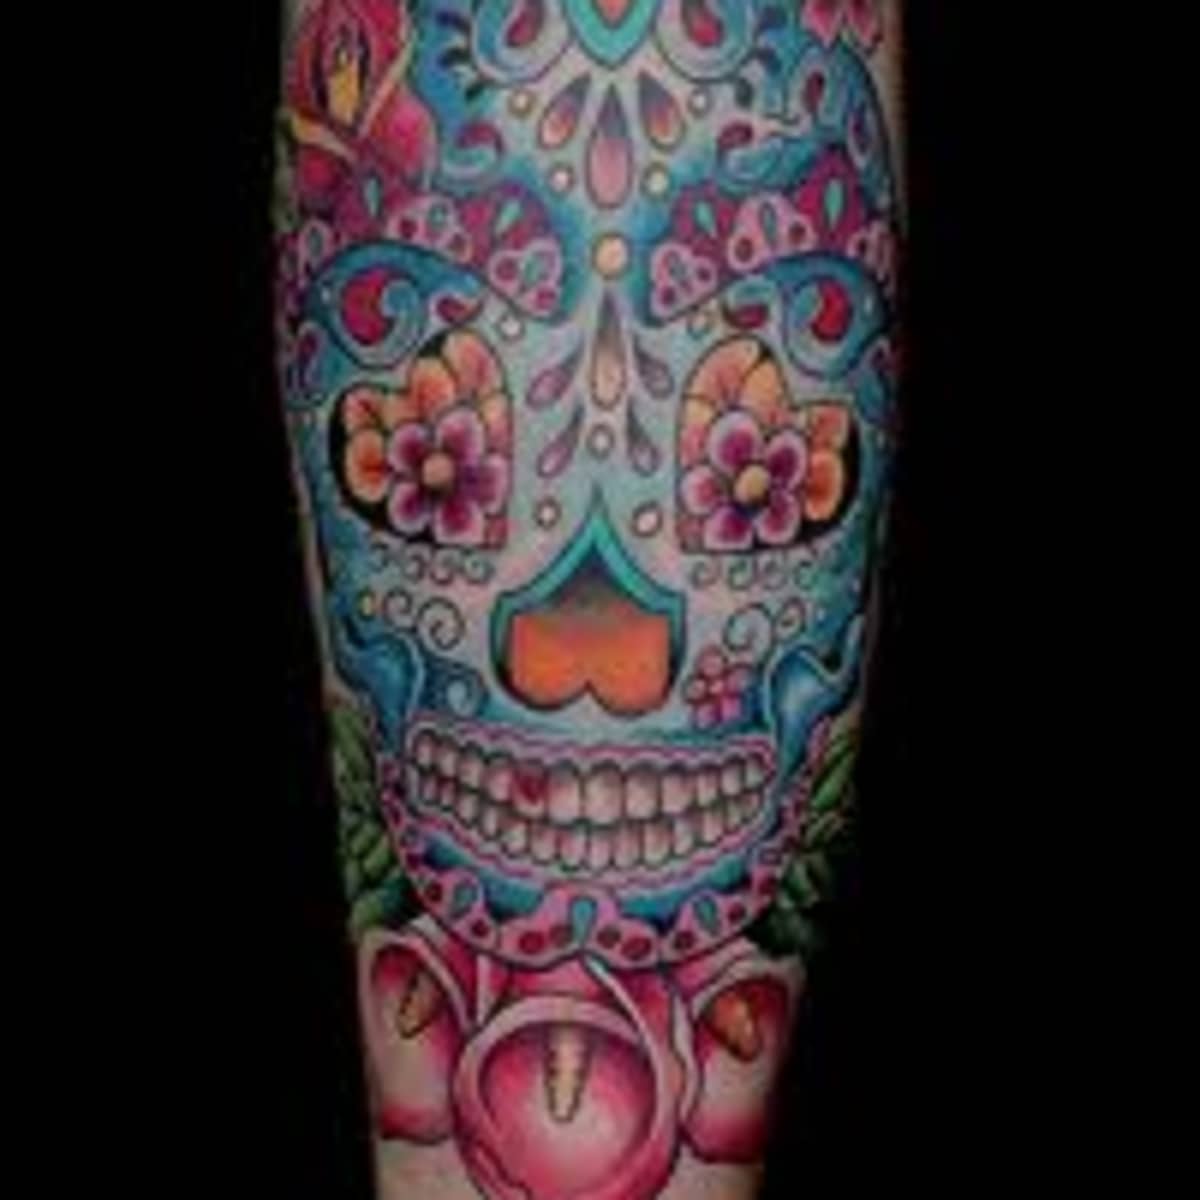 Sugar Skull Tattoos And Designs-Sugar Skull Tattoo Meanings And Ideas-Sugar Skull Tattoo Pictures - HubPages